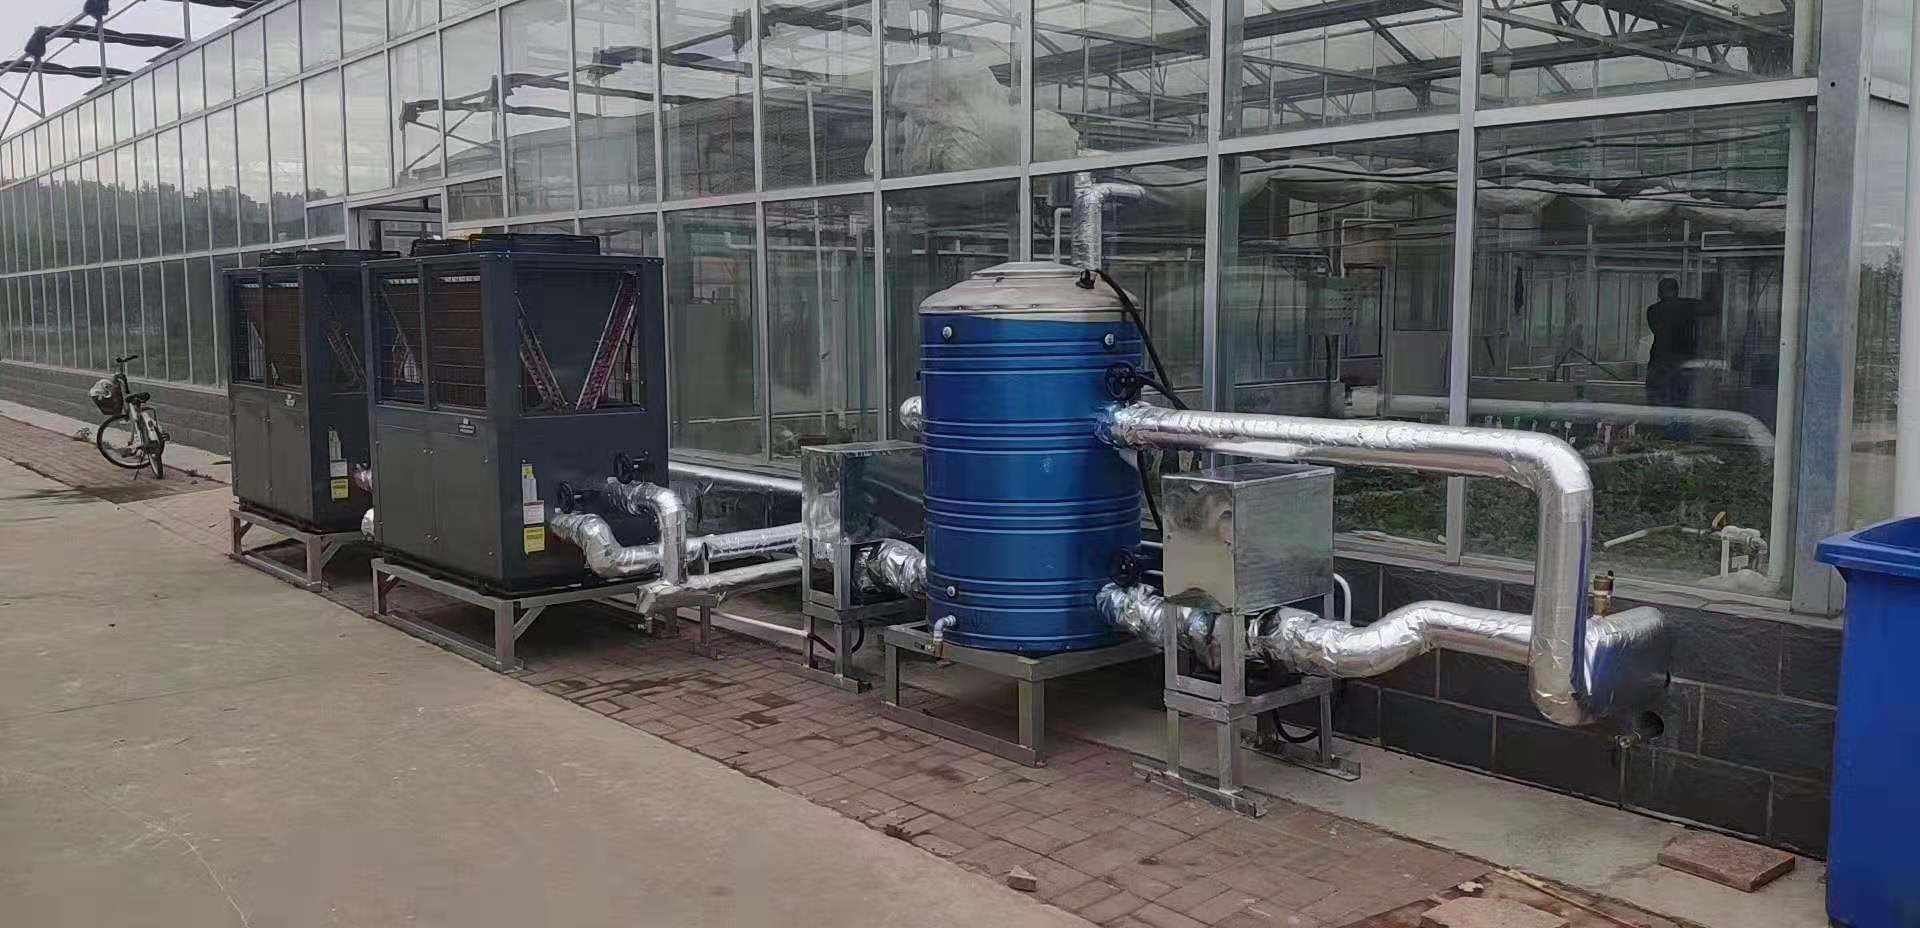 苗圃温室加温采暖设备 空气能热泵供暖